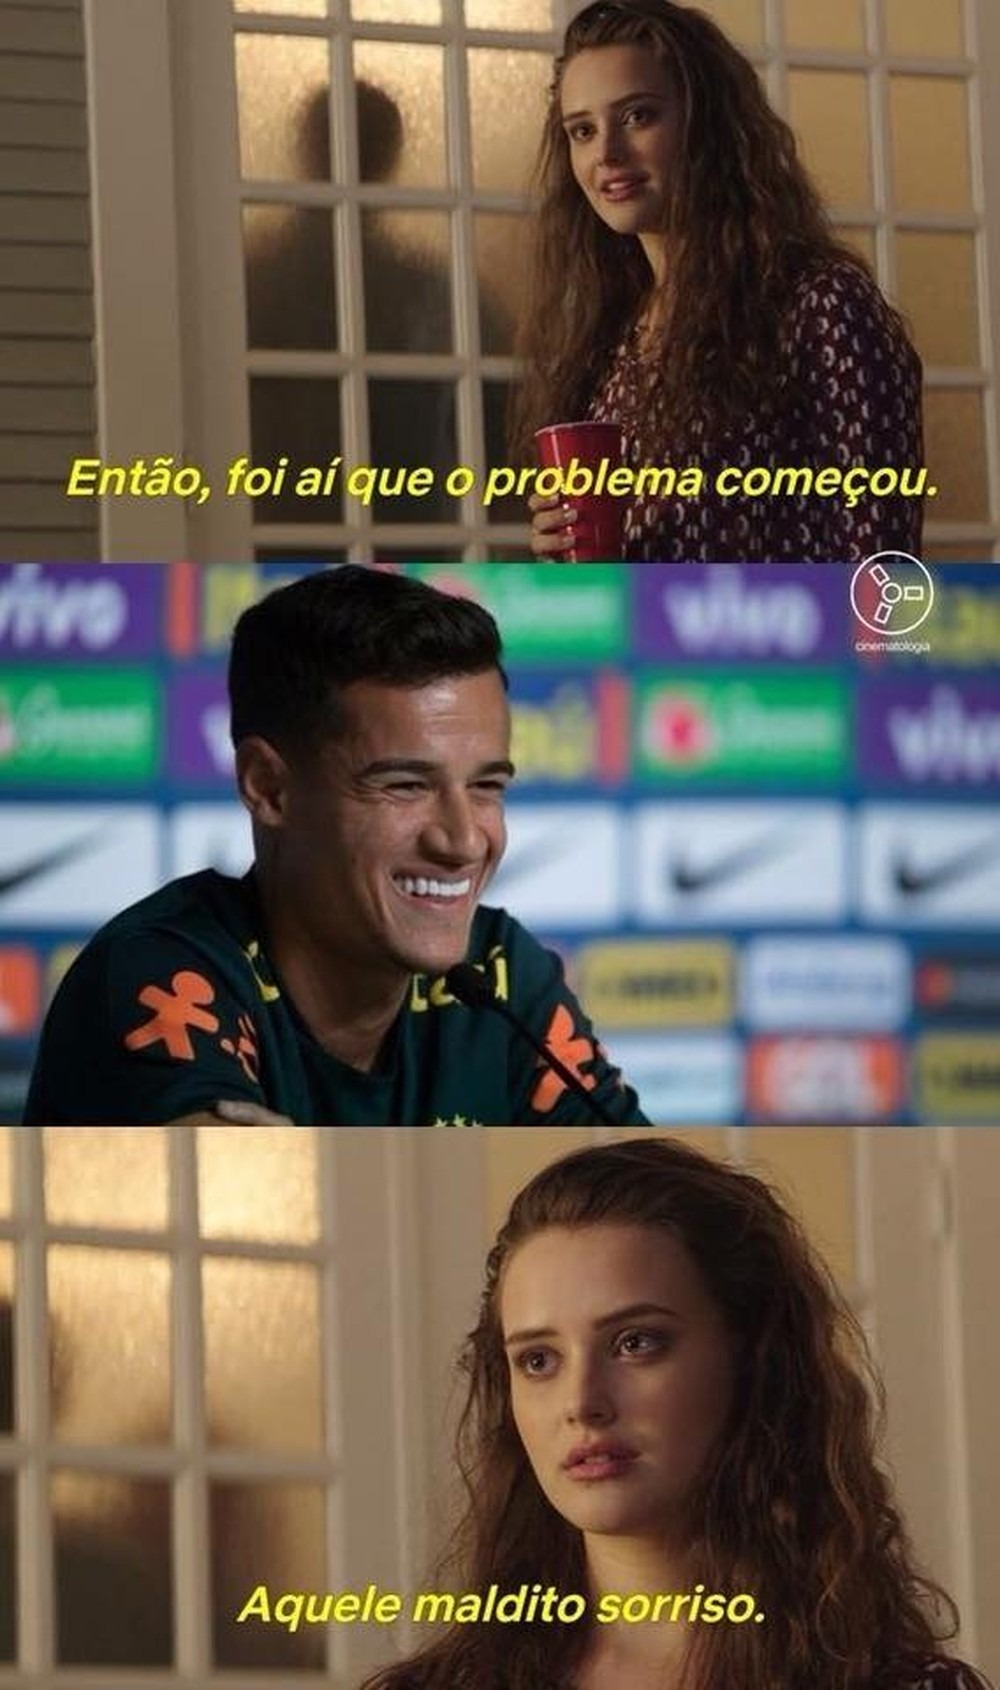 Jogo entre Brasil e Costa Rica rende memes hilários; veja os principais